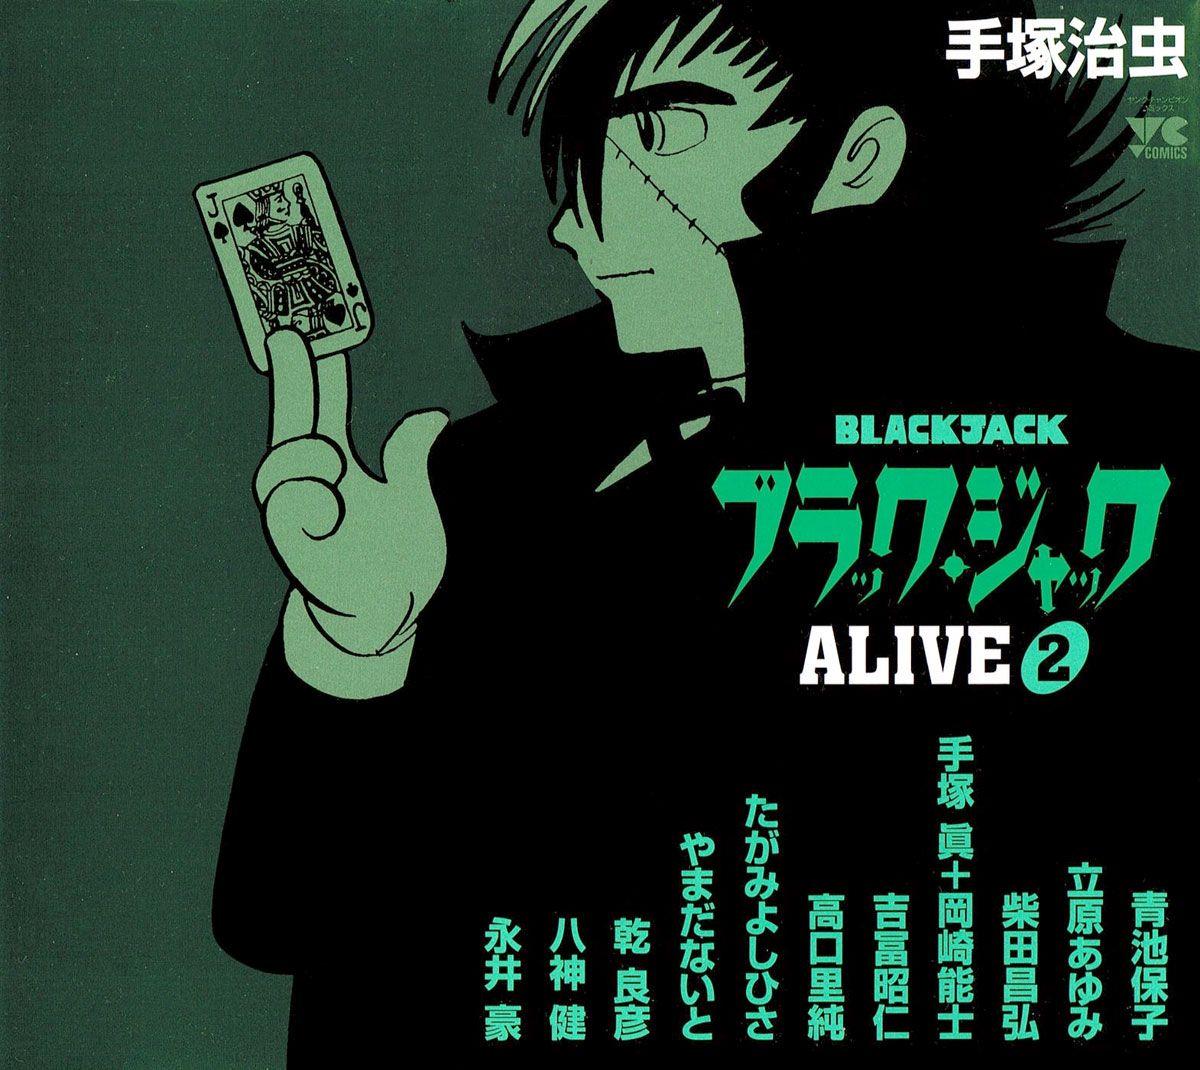 Black Jack Alive - episode 1 - 1